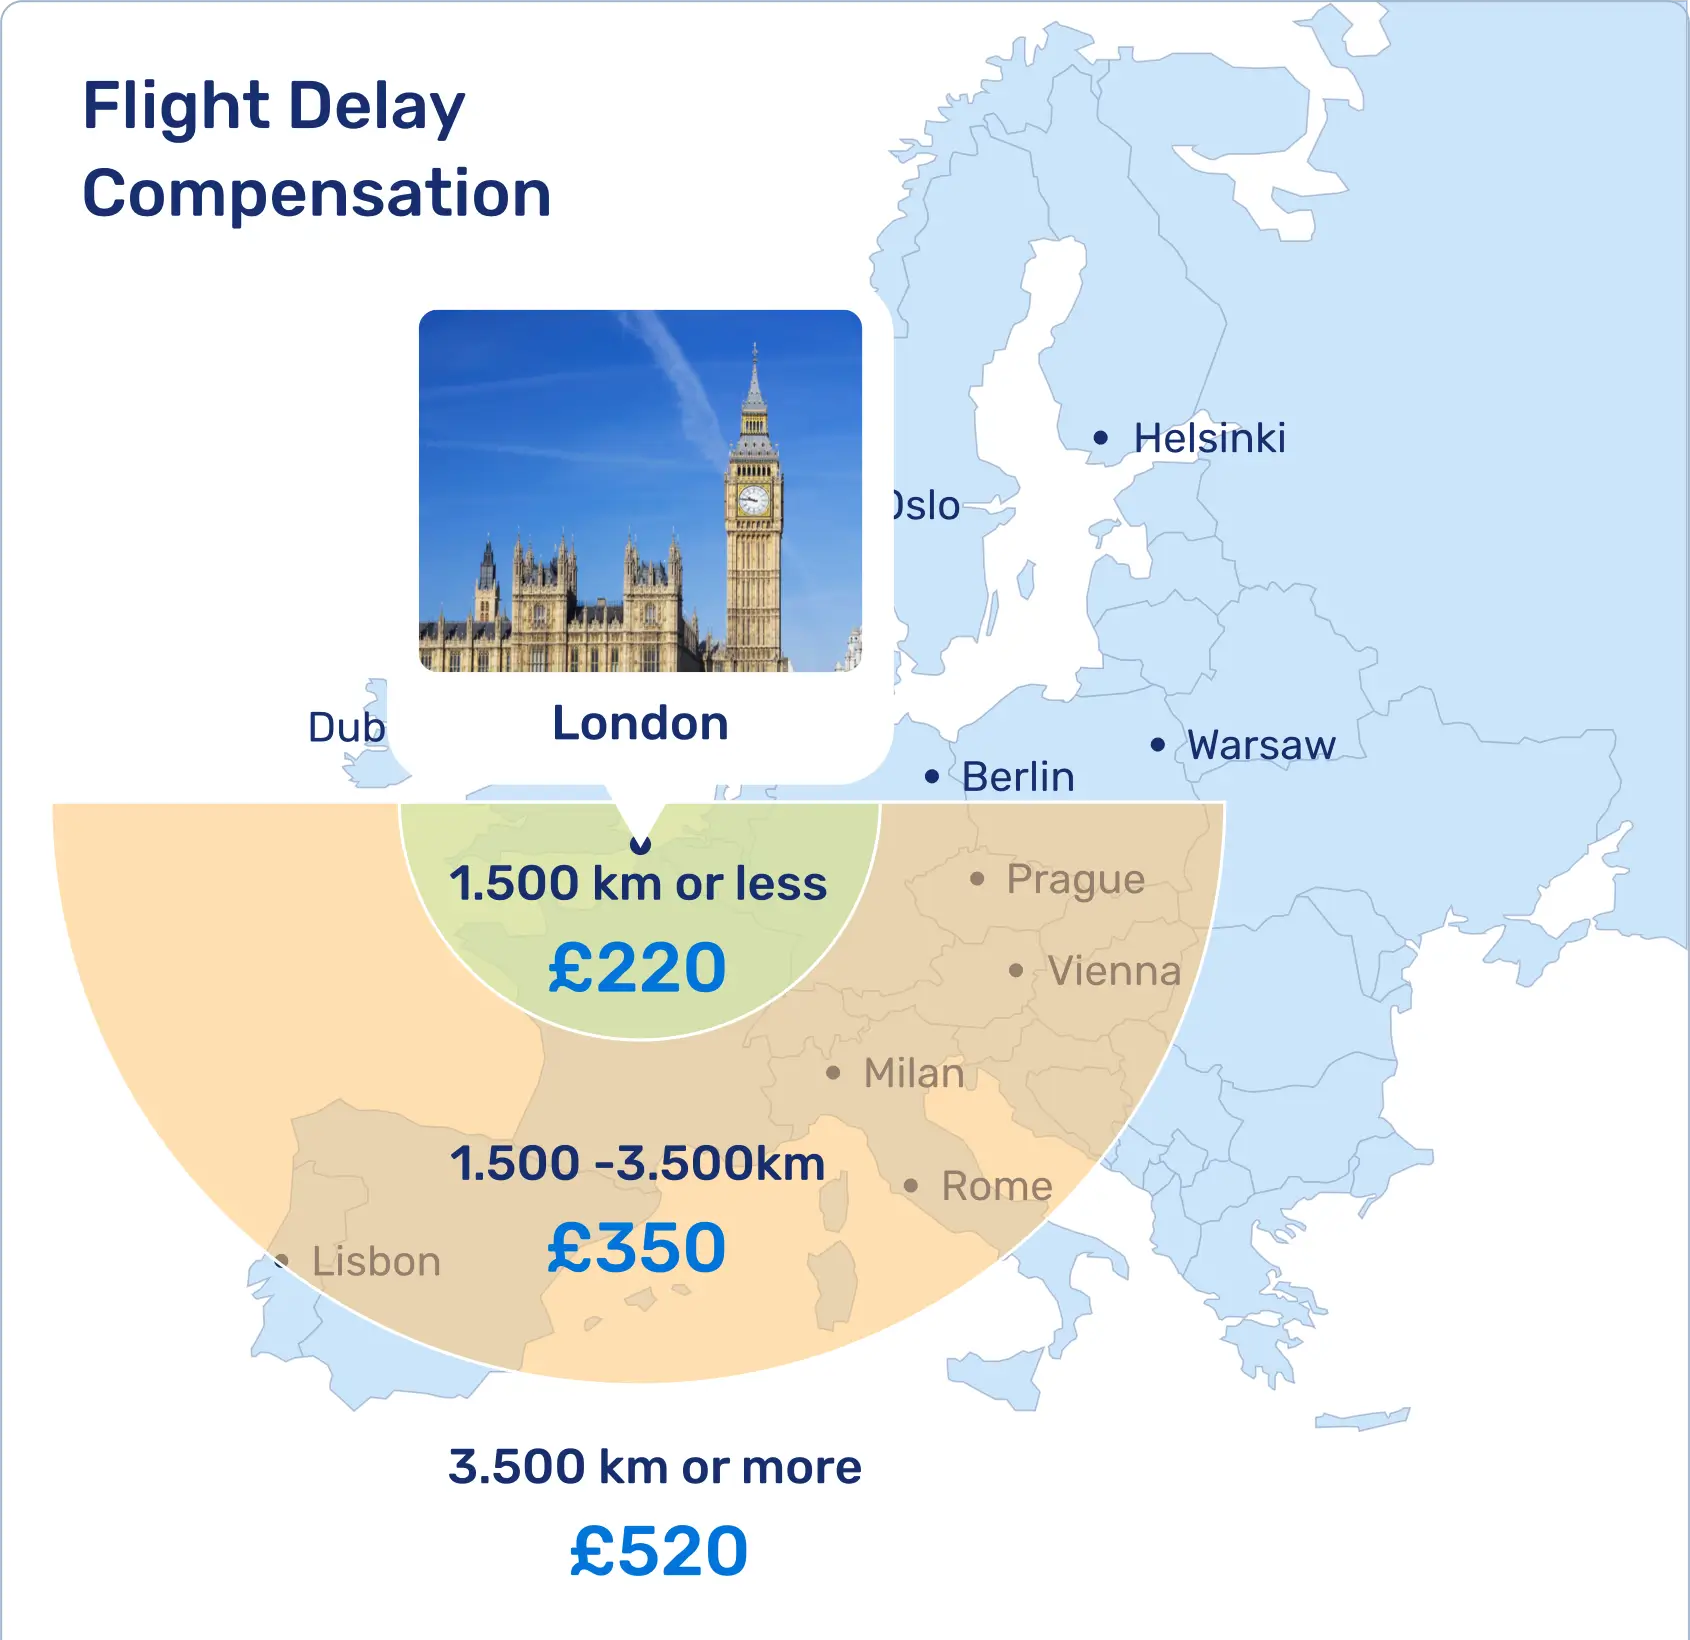 Flight Delay Compensation Amounts